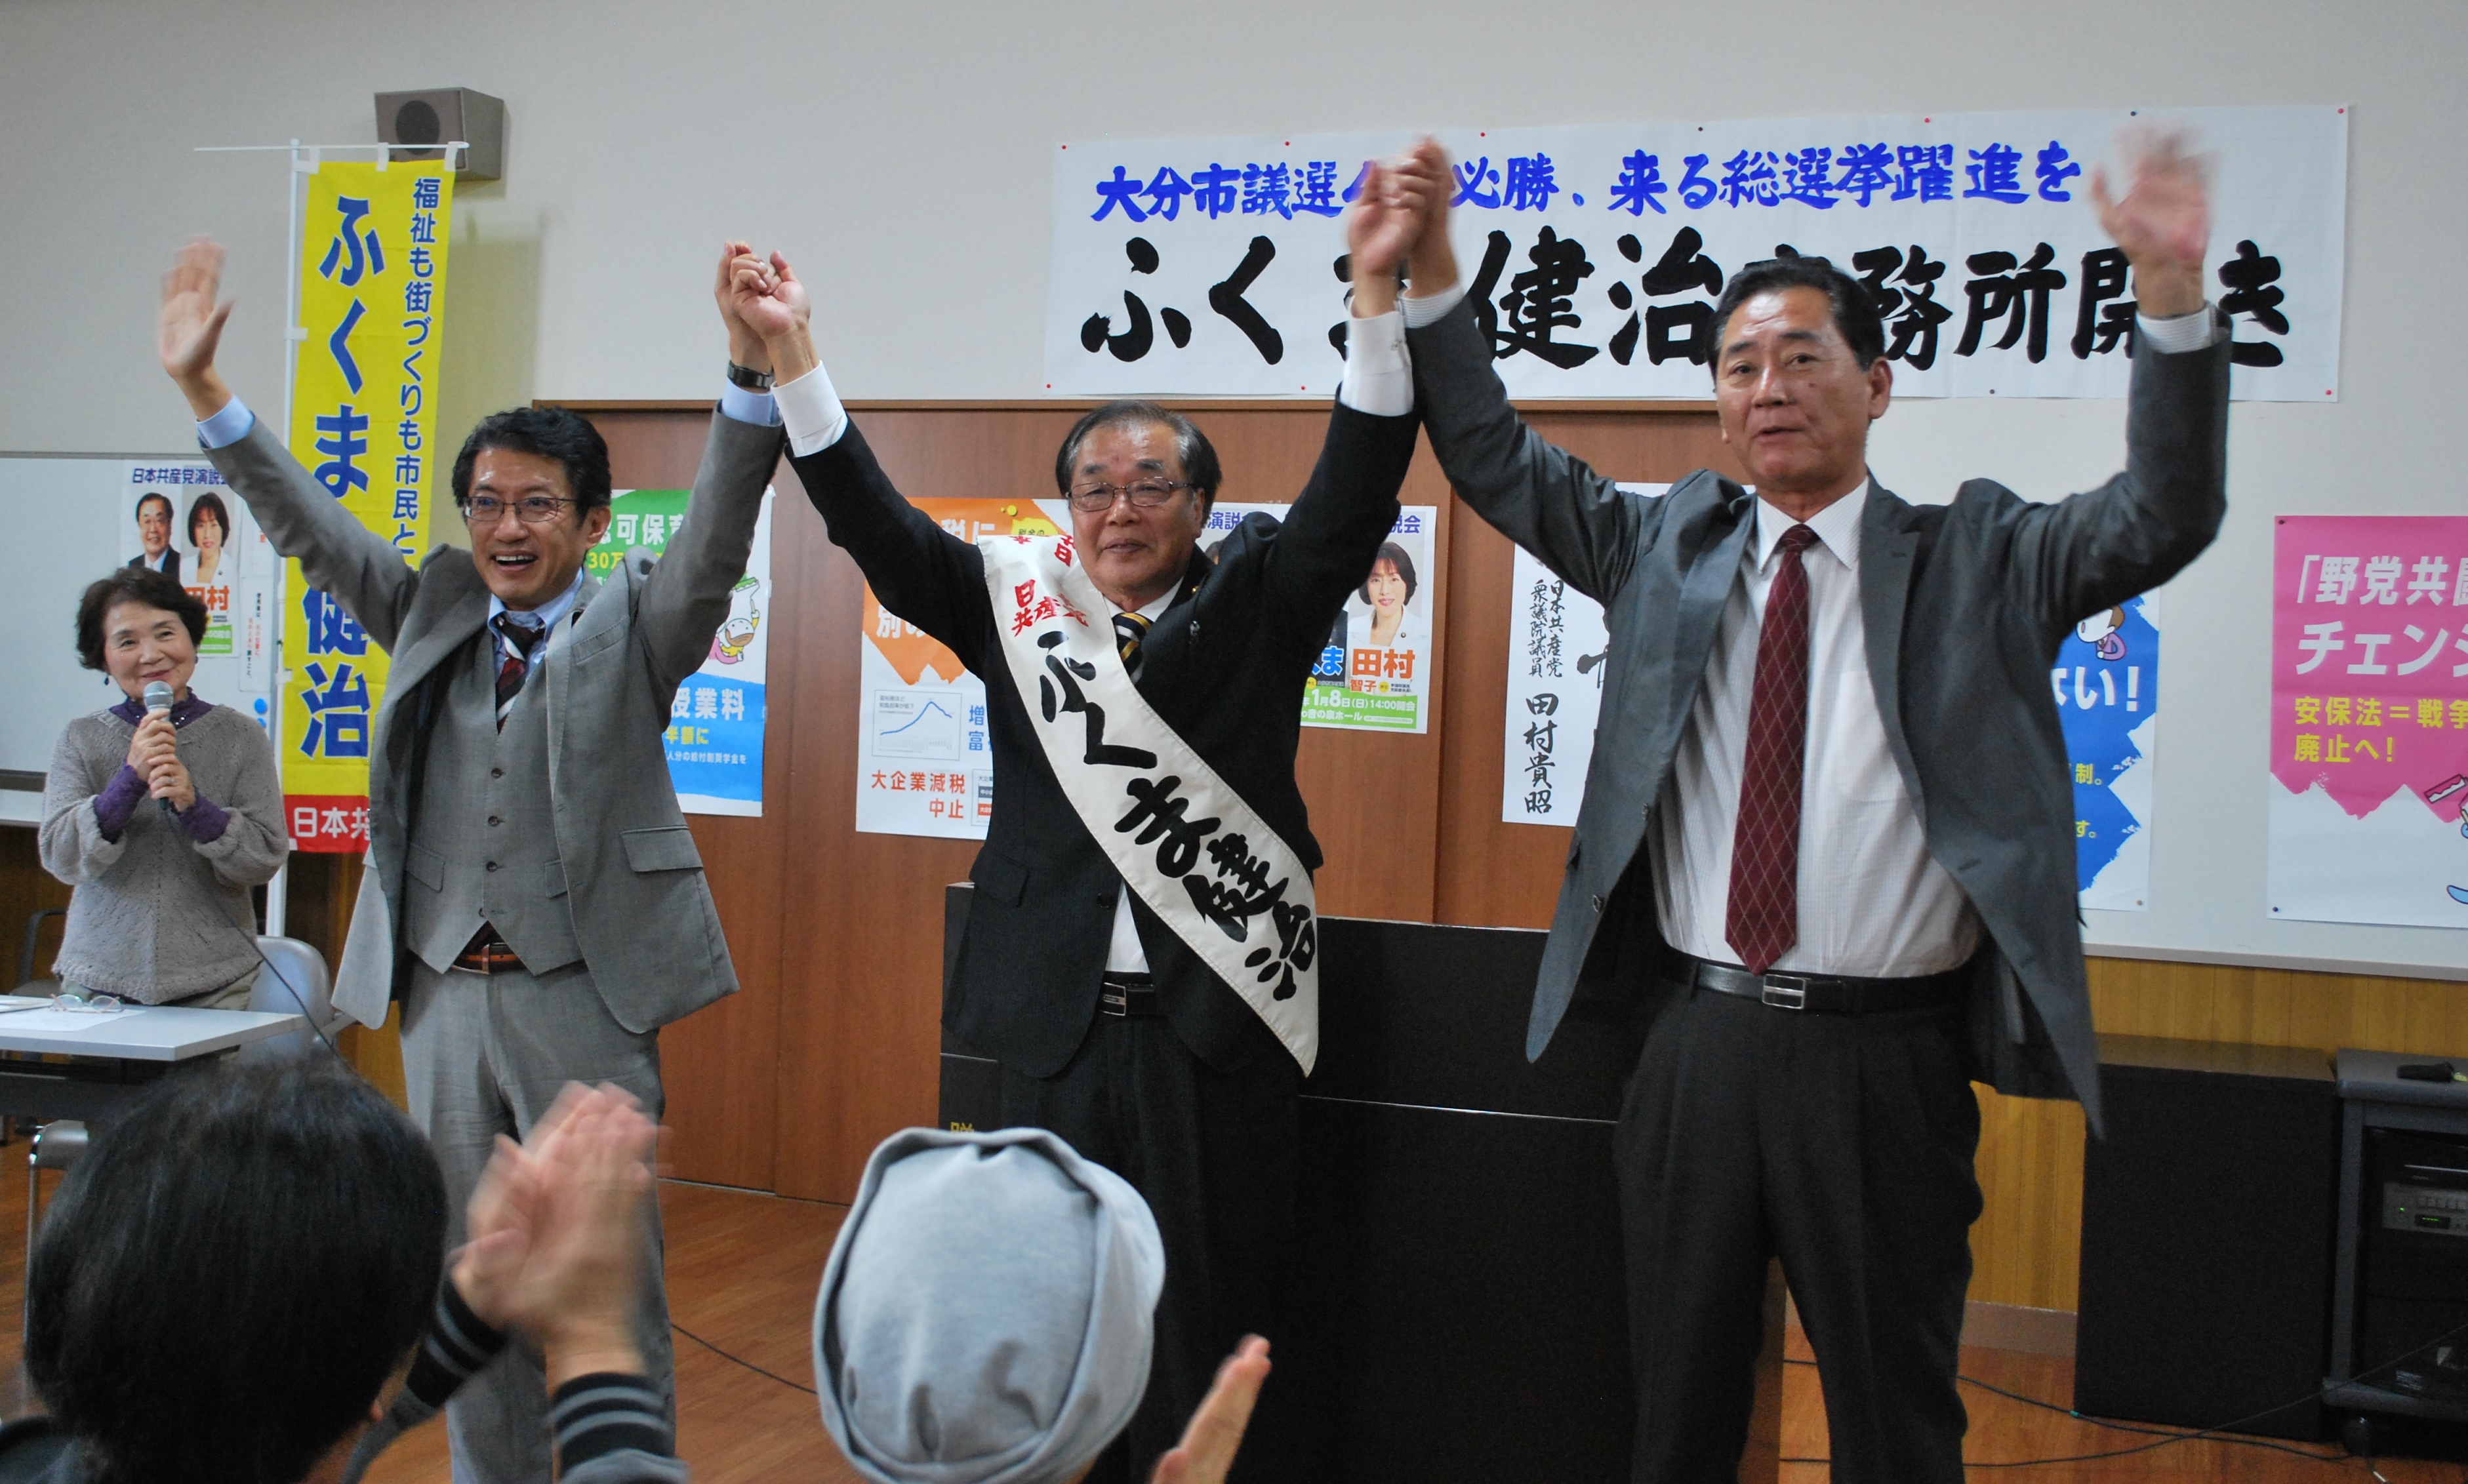 参加者の声援に応える、ふくま候補と田村衆院議員（その左）、堤栄三県議（右端）ら＝５日、大分市